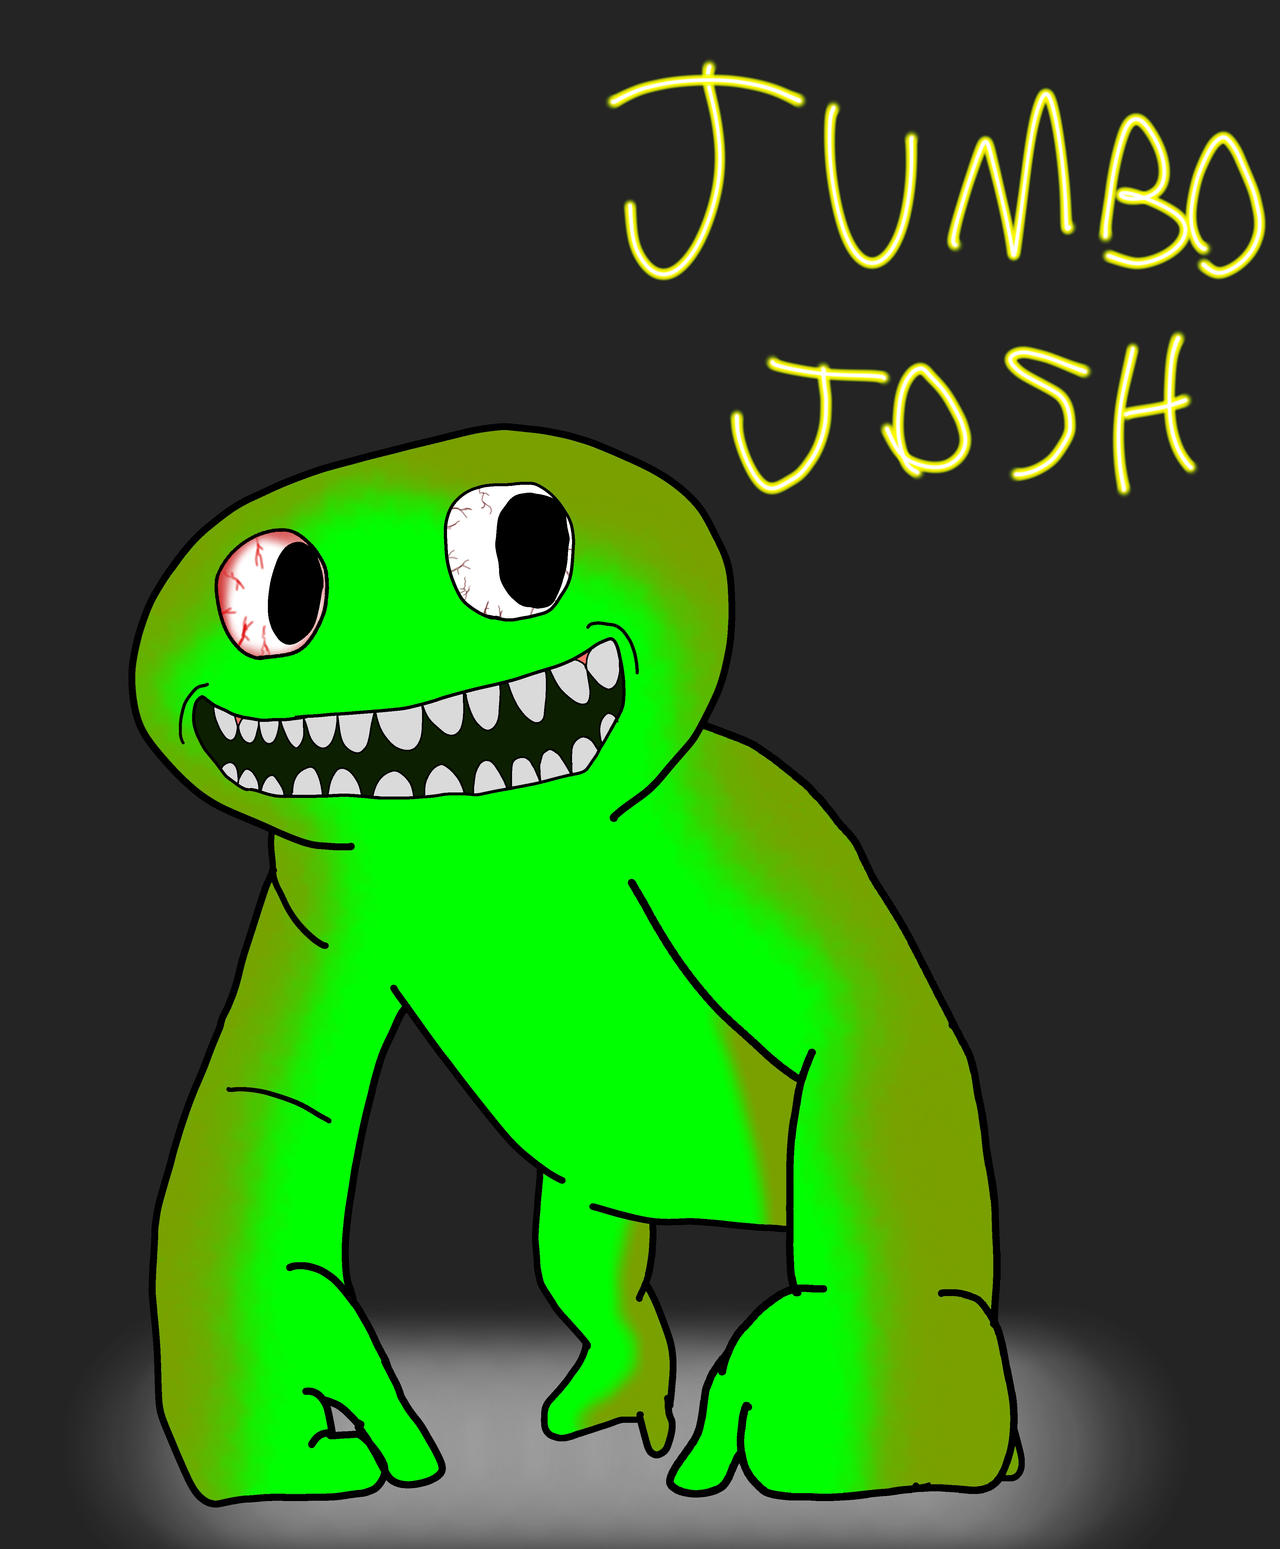 Jumbo Josh (Garten Of Banban) by DarkDragonDeception on DeviantArt